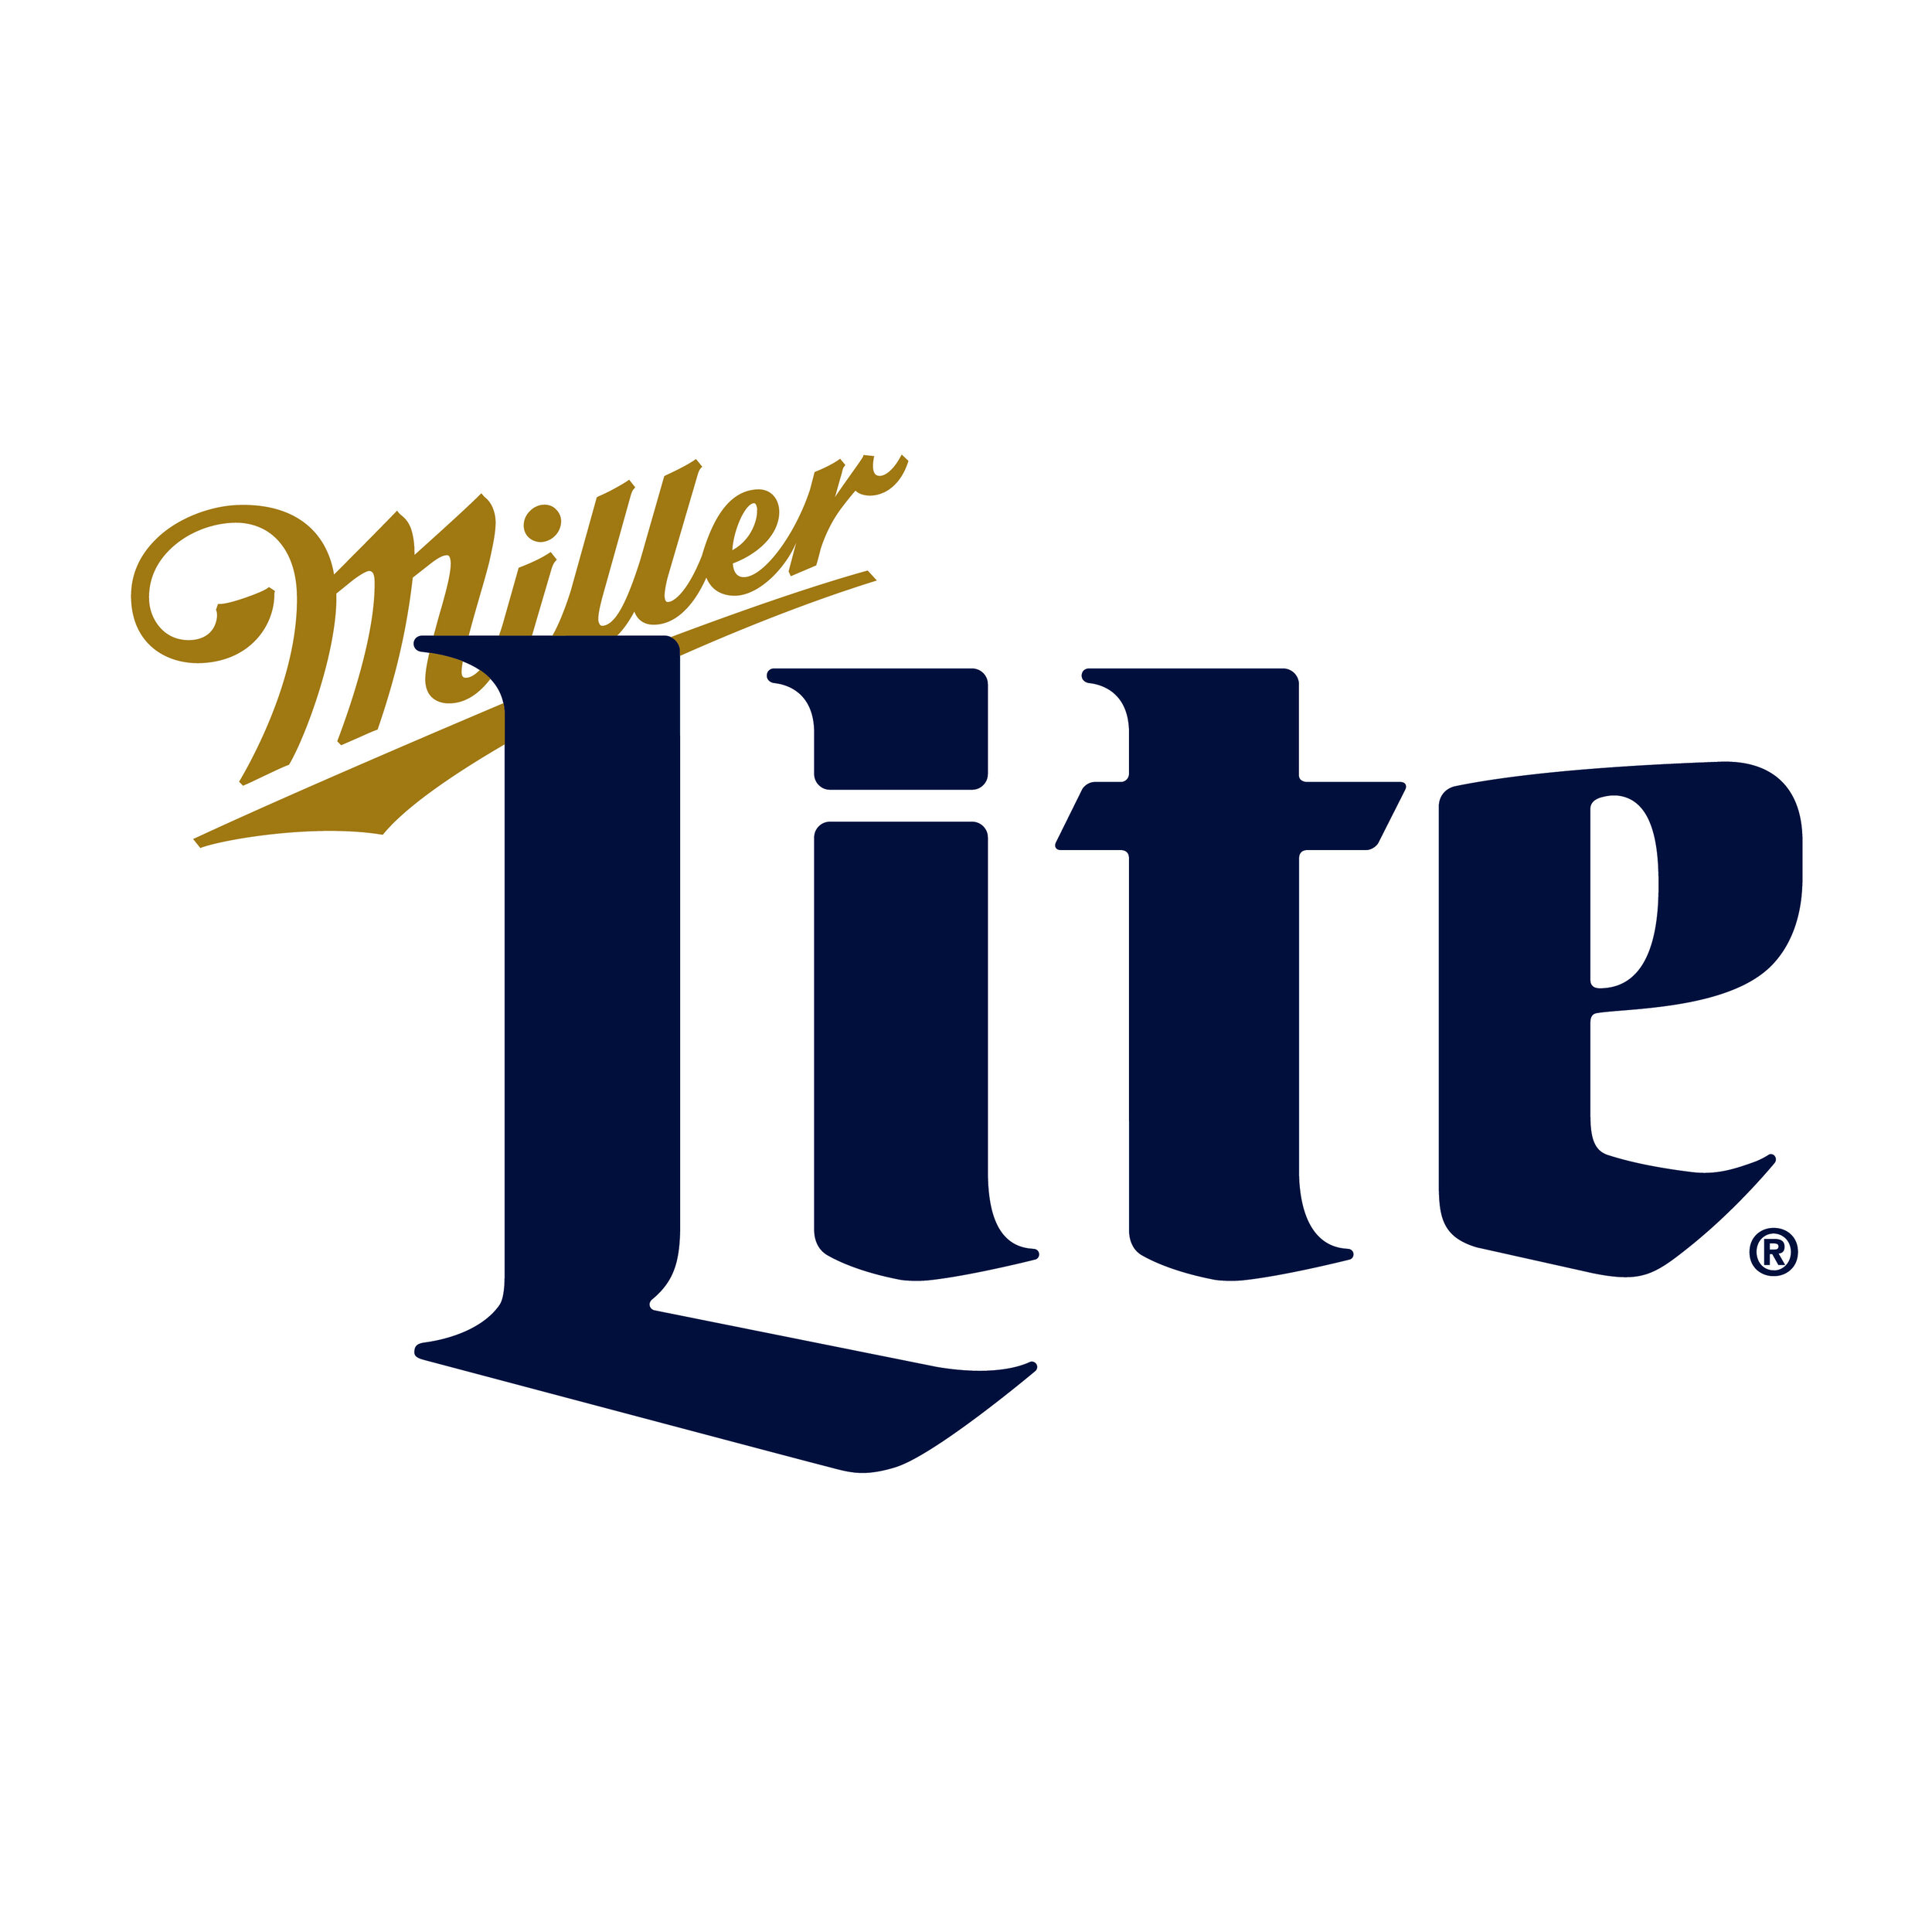 Miller Lite Retro Logo.JPG